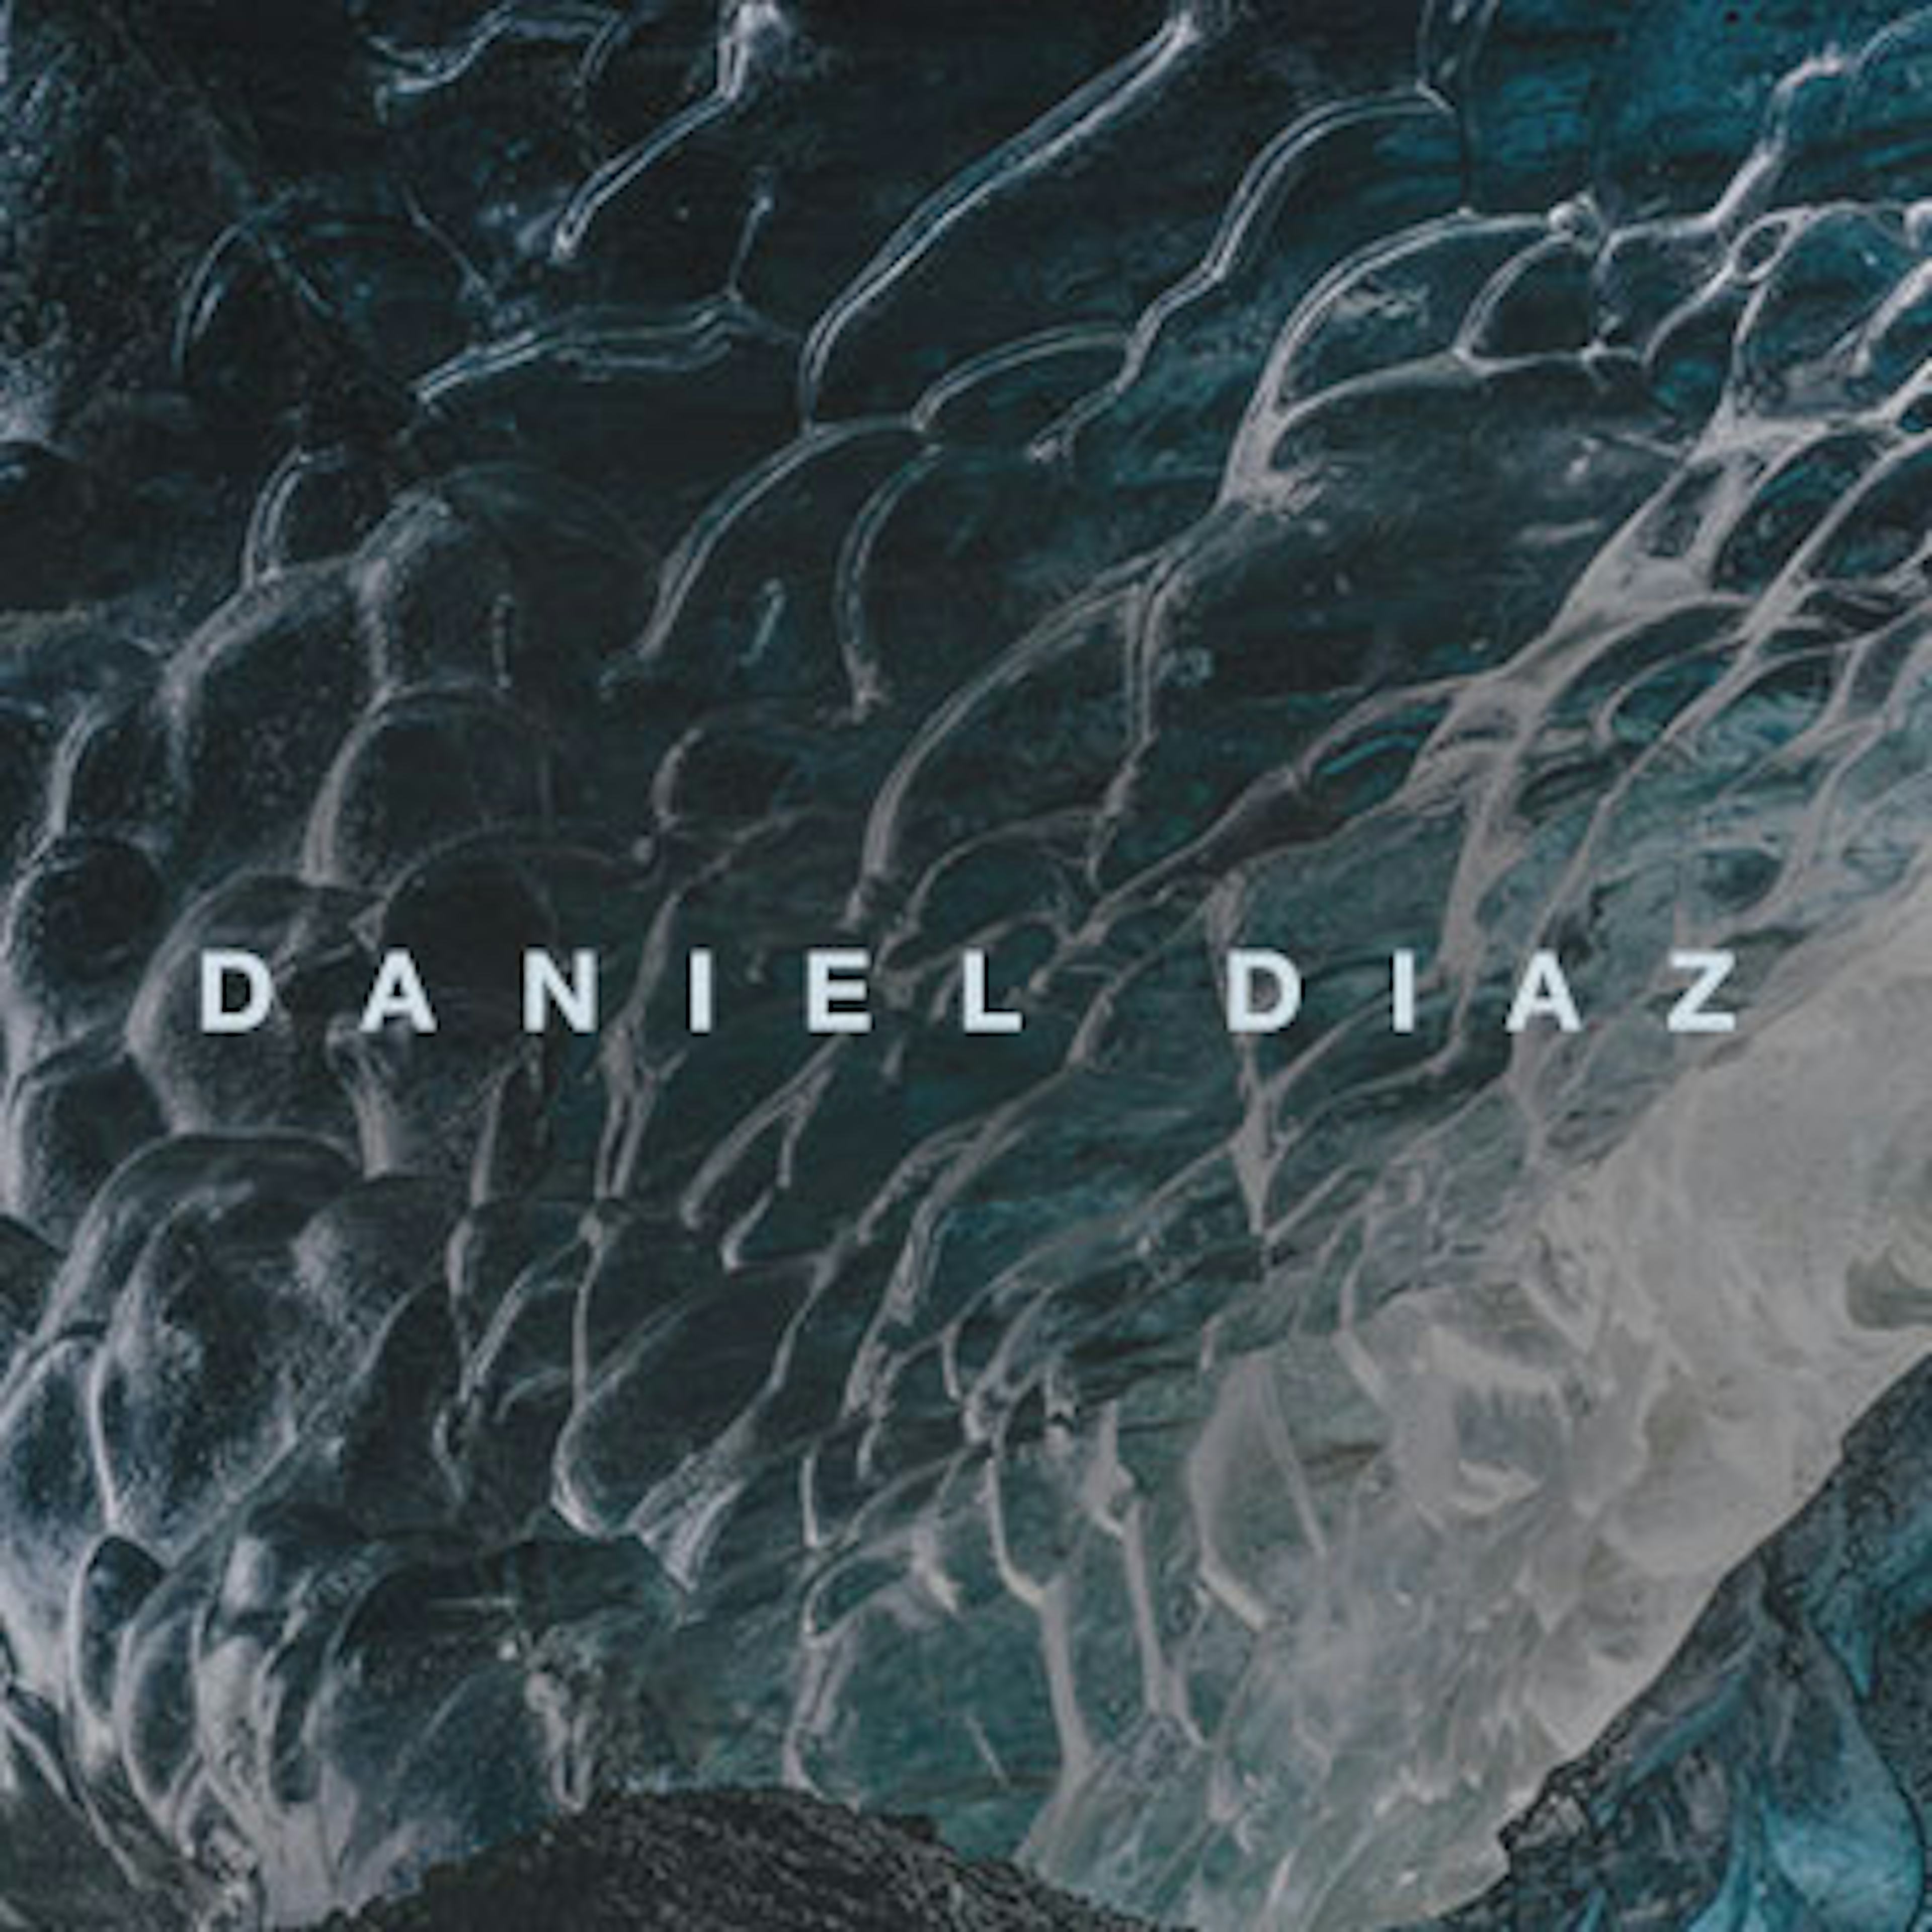 Daniel Diaz artwork